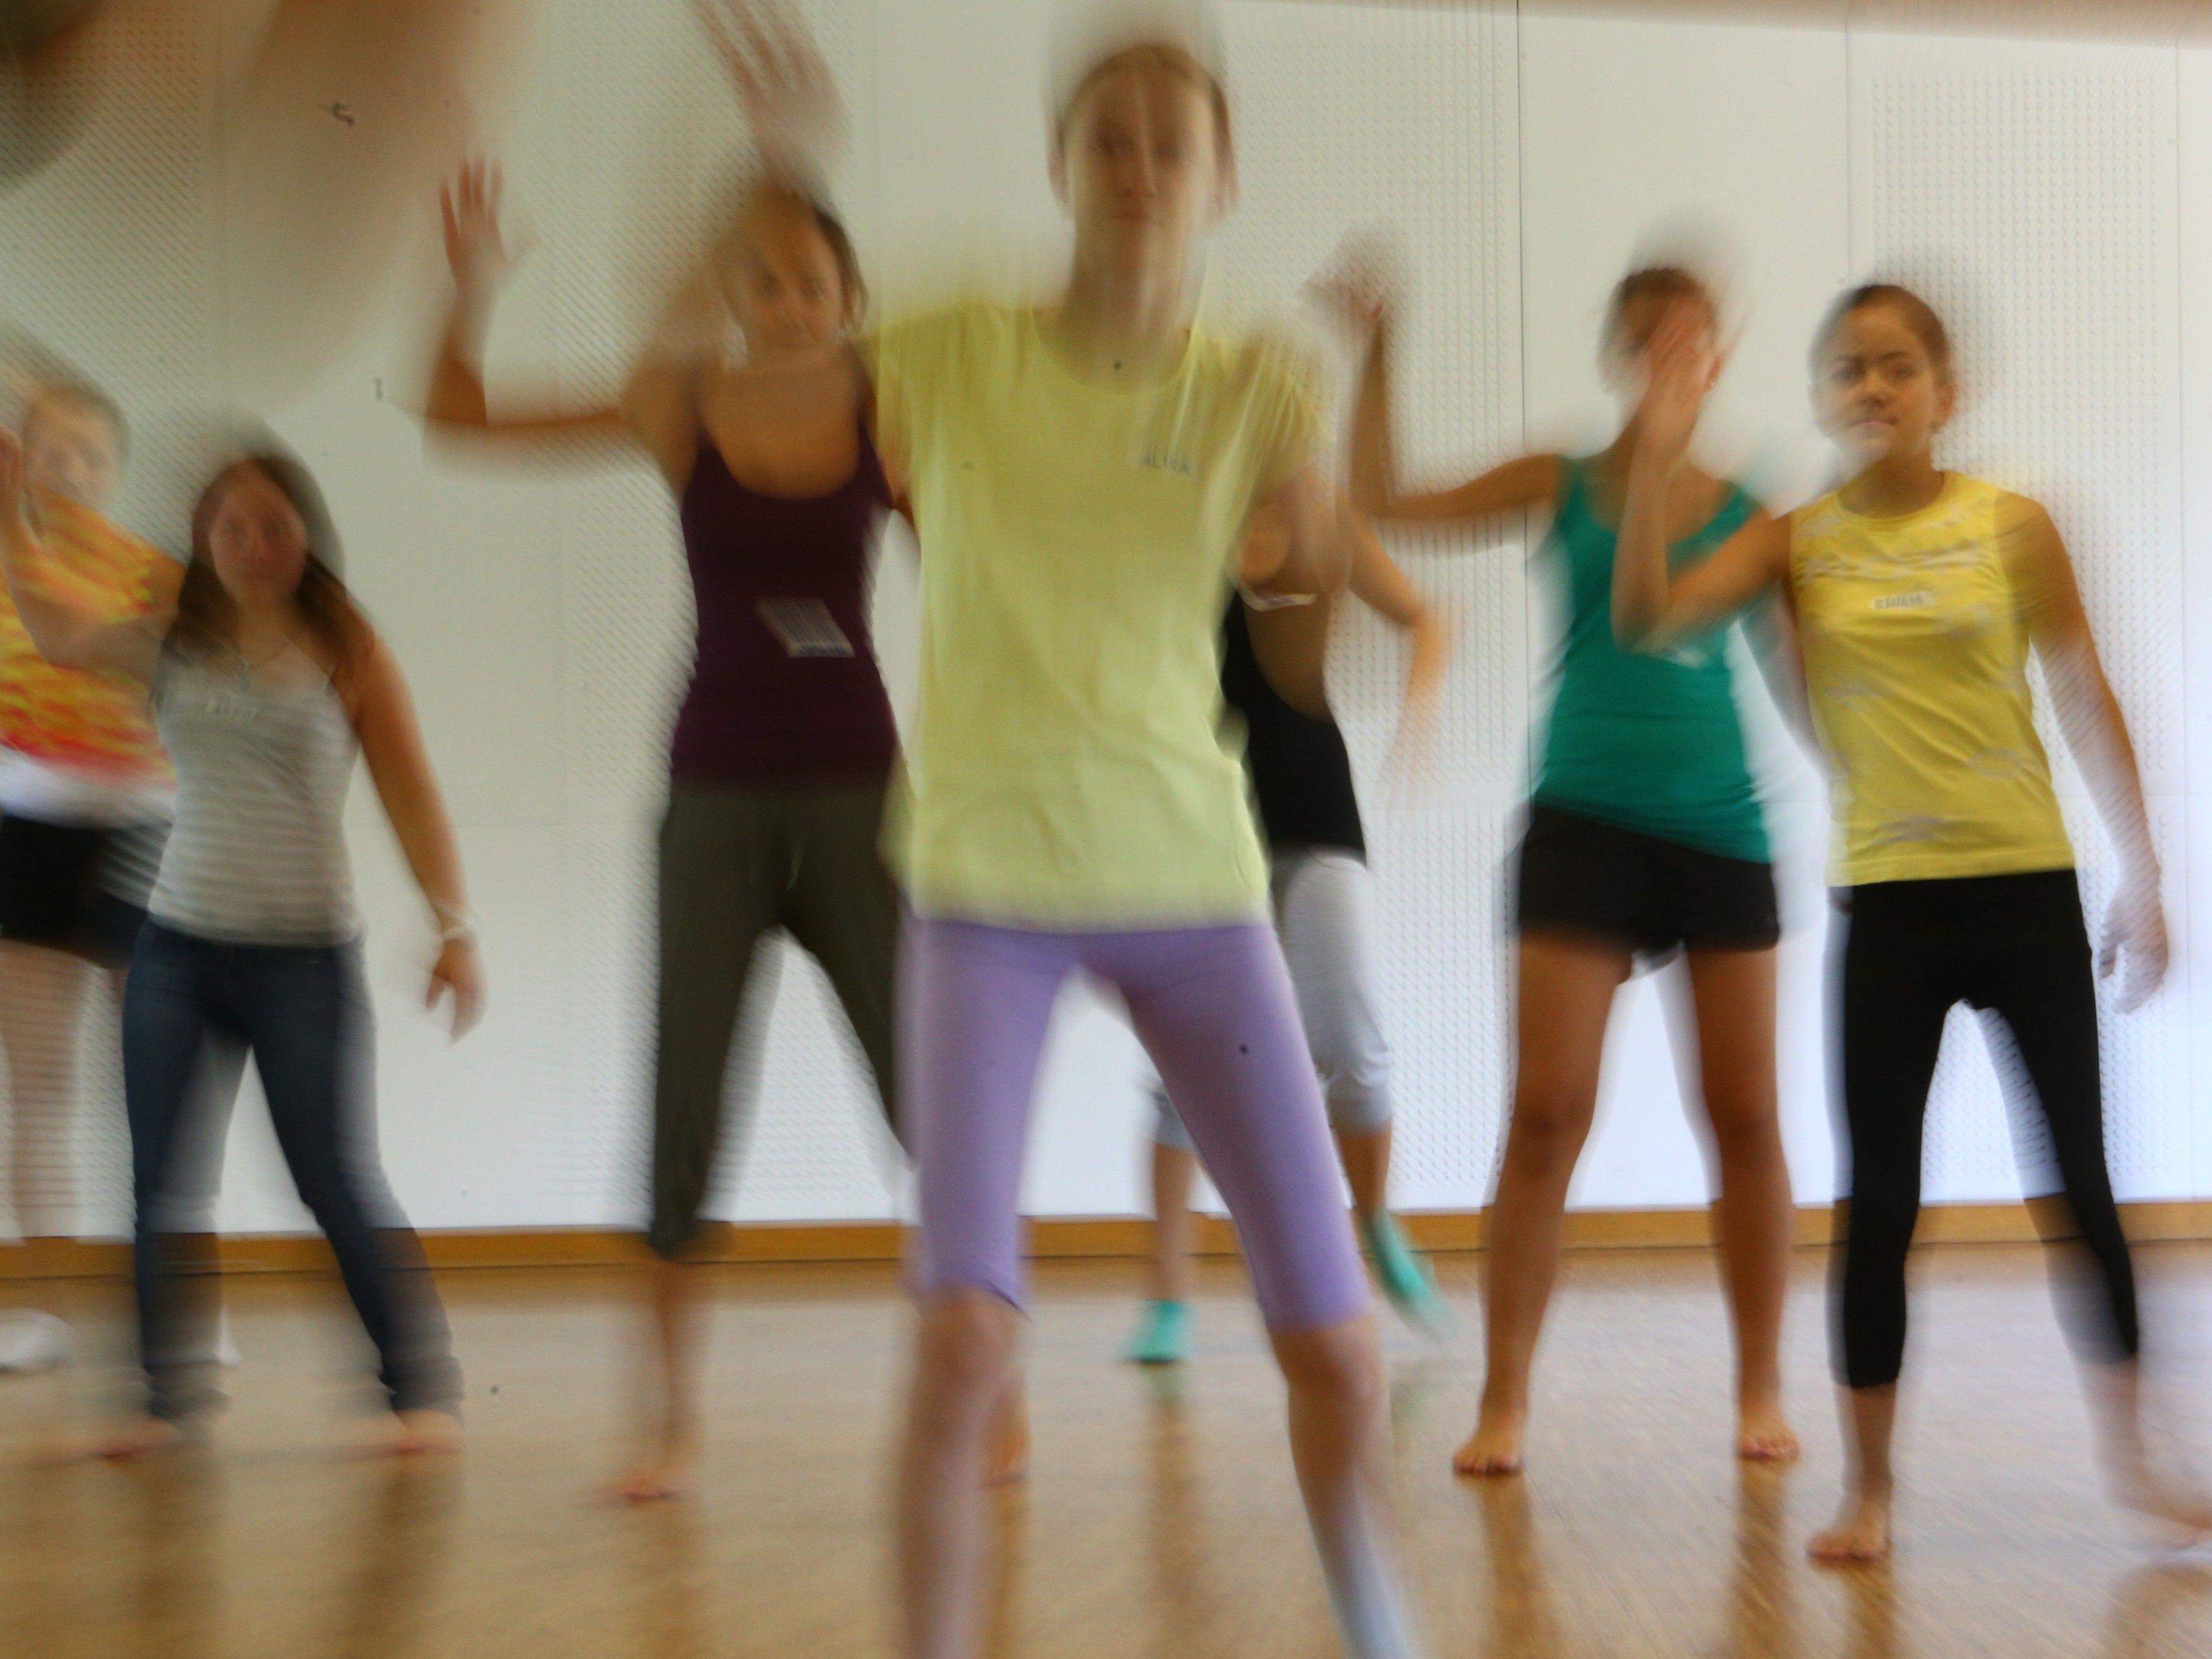 Musik- und Tanz-Workshop im Jugend- und Bildungshaus St. Arbogast in Götzis.